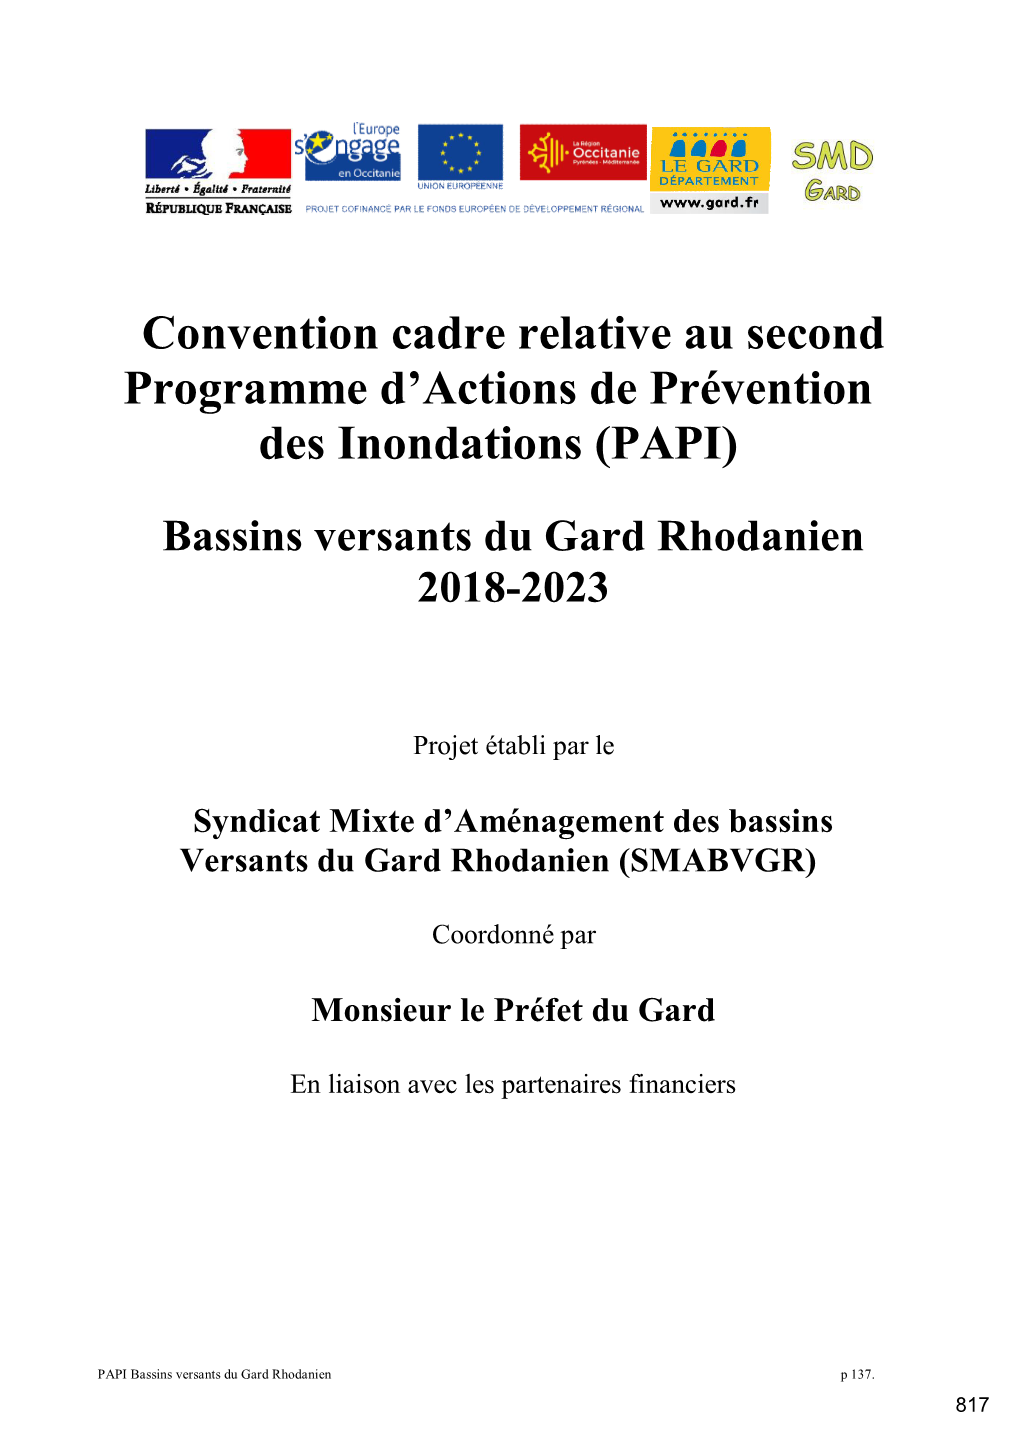 Convention Cadre Relative Au Second Programme D'actions De Prévention